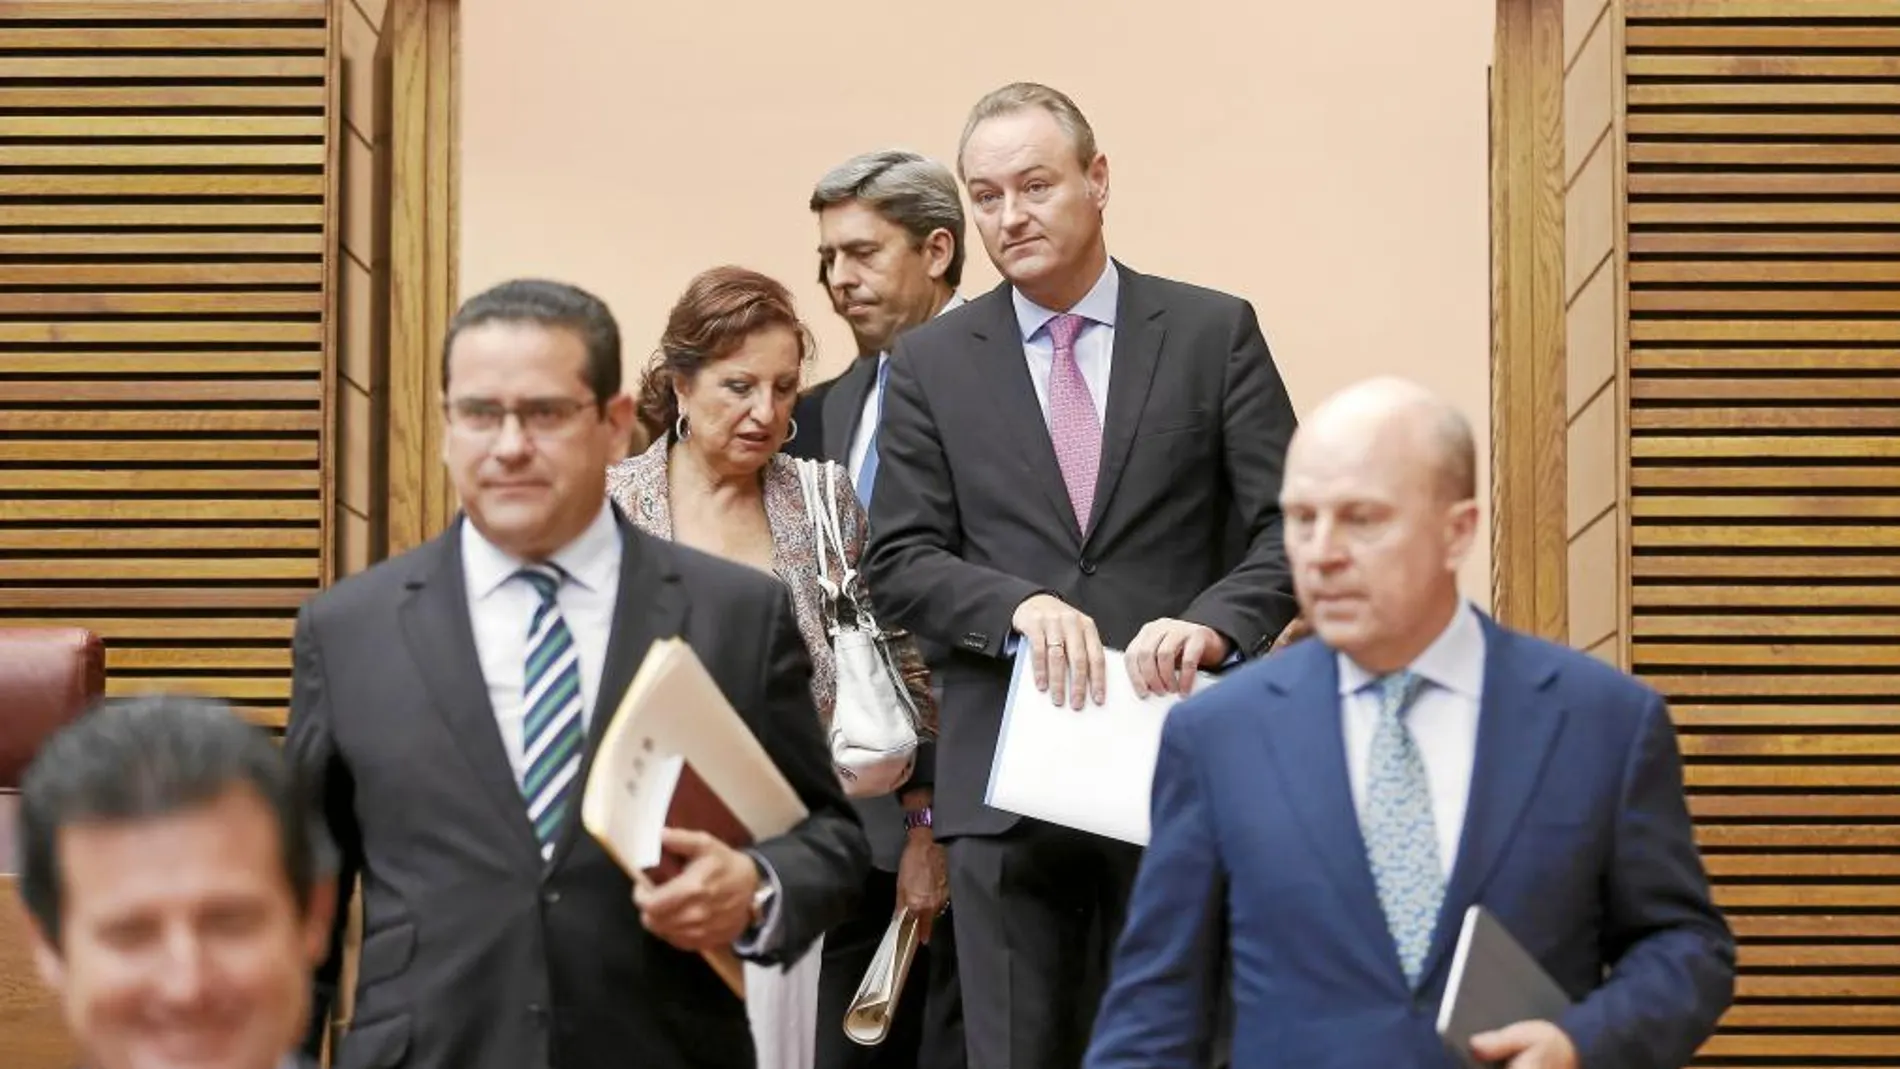 El presidente Fabra entra en el hemiciclo «escoltado» por Císcar, Bellver y Buch. A su lado, Llinares. Al fondo, Rambla